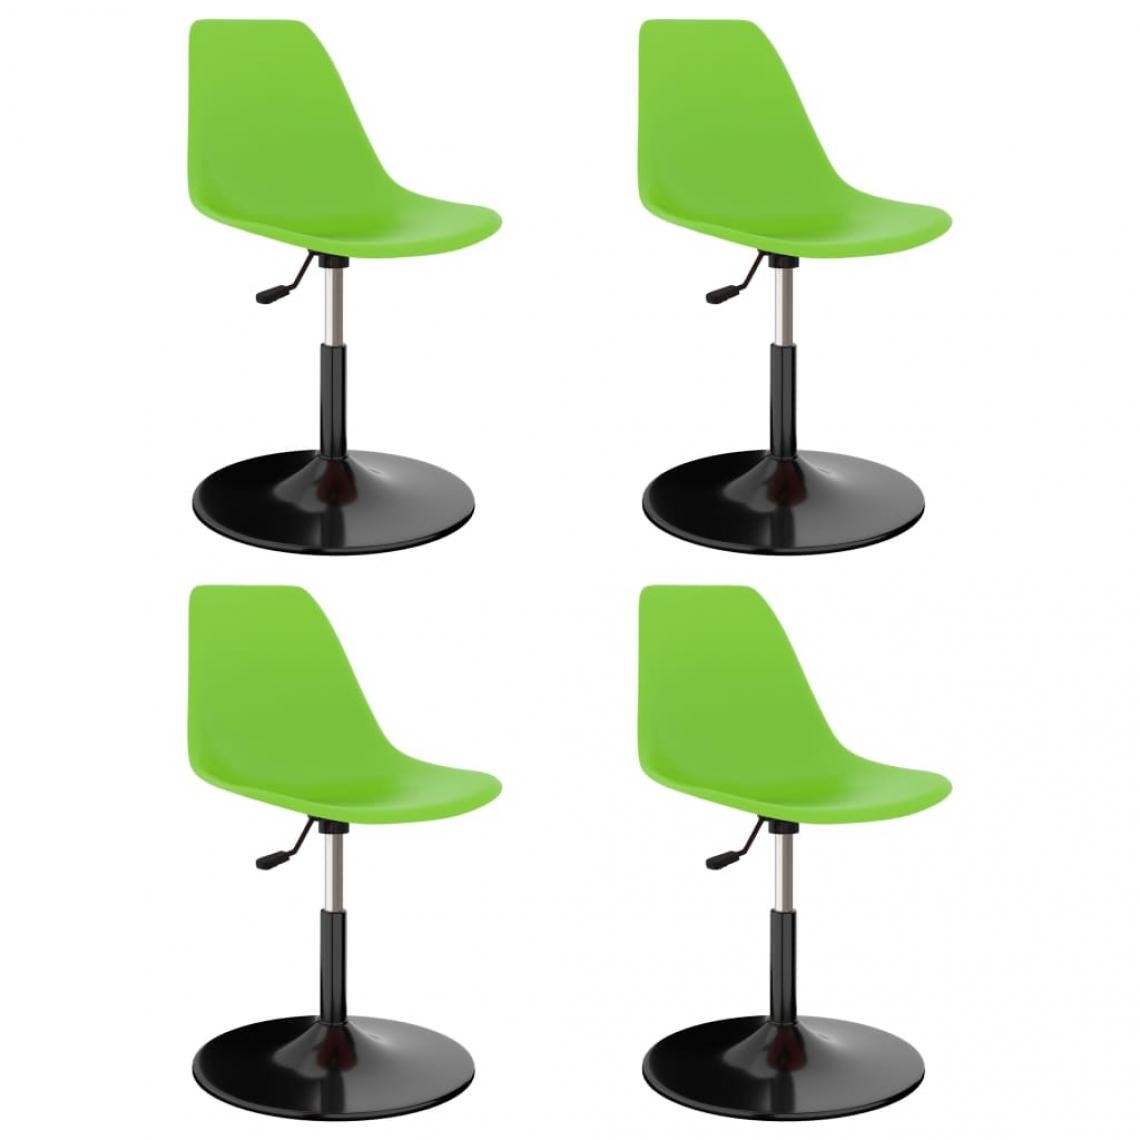 Decoshop26 - Lot de 4 chaises de salle à manger cuisine pivotantes design moderne en polypropylène vert CDS021903 - Chaises